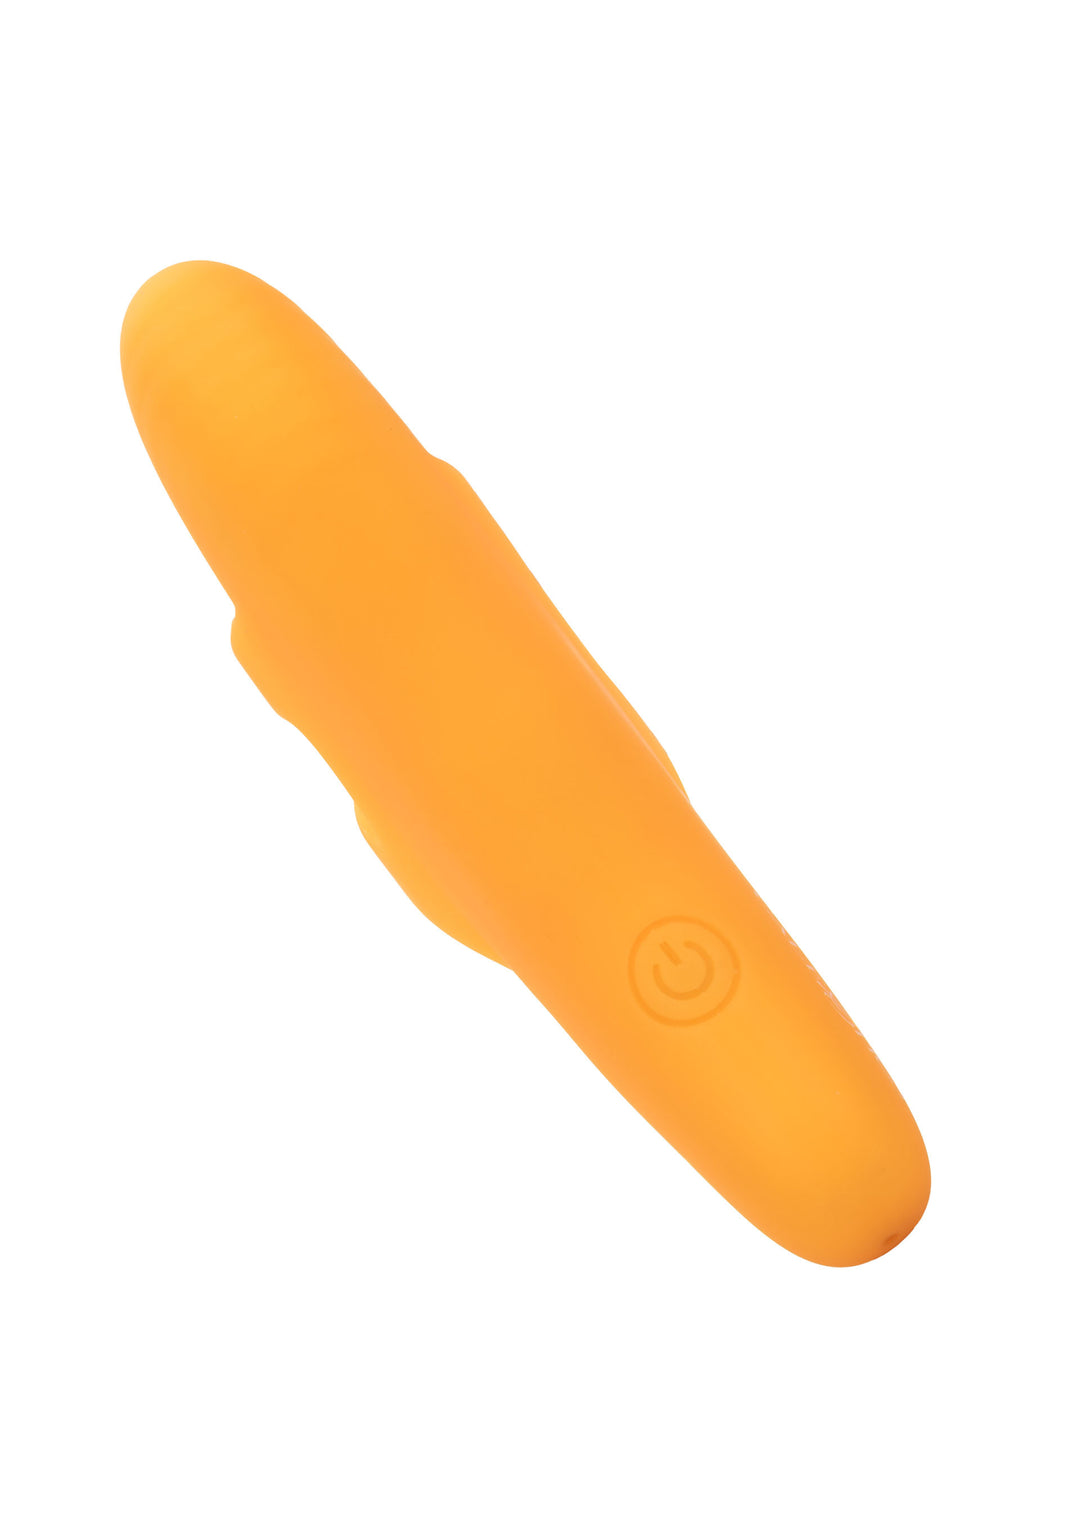 The Pleasure Vibe finger vibrator